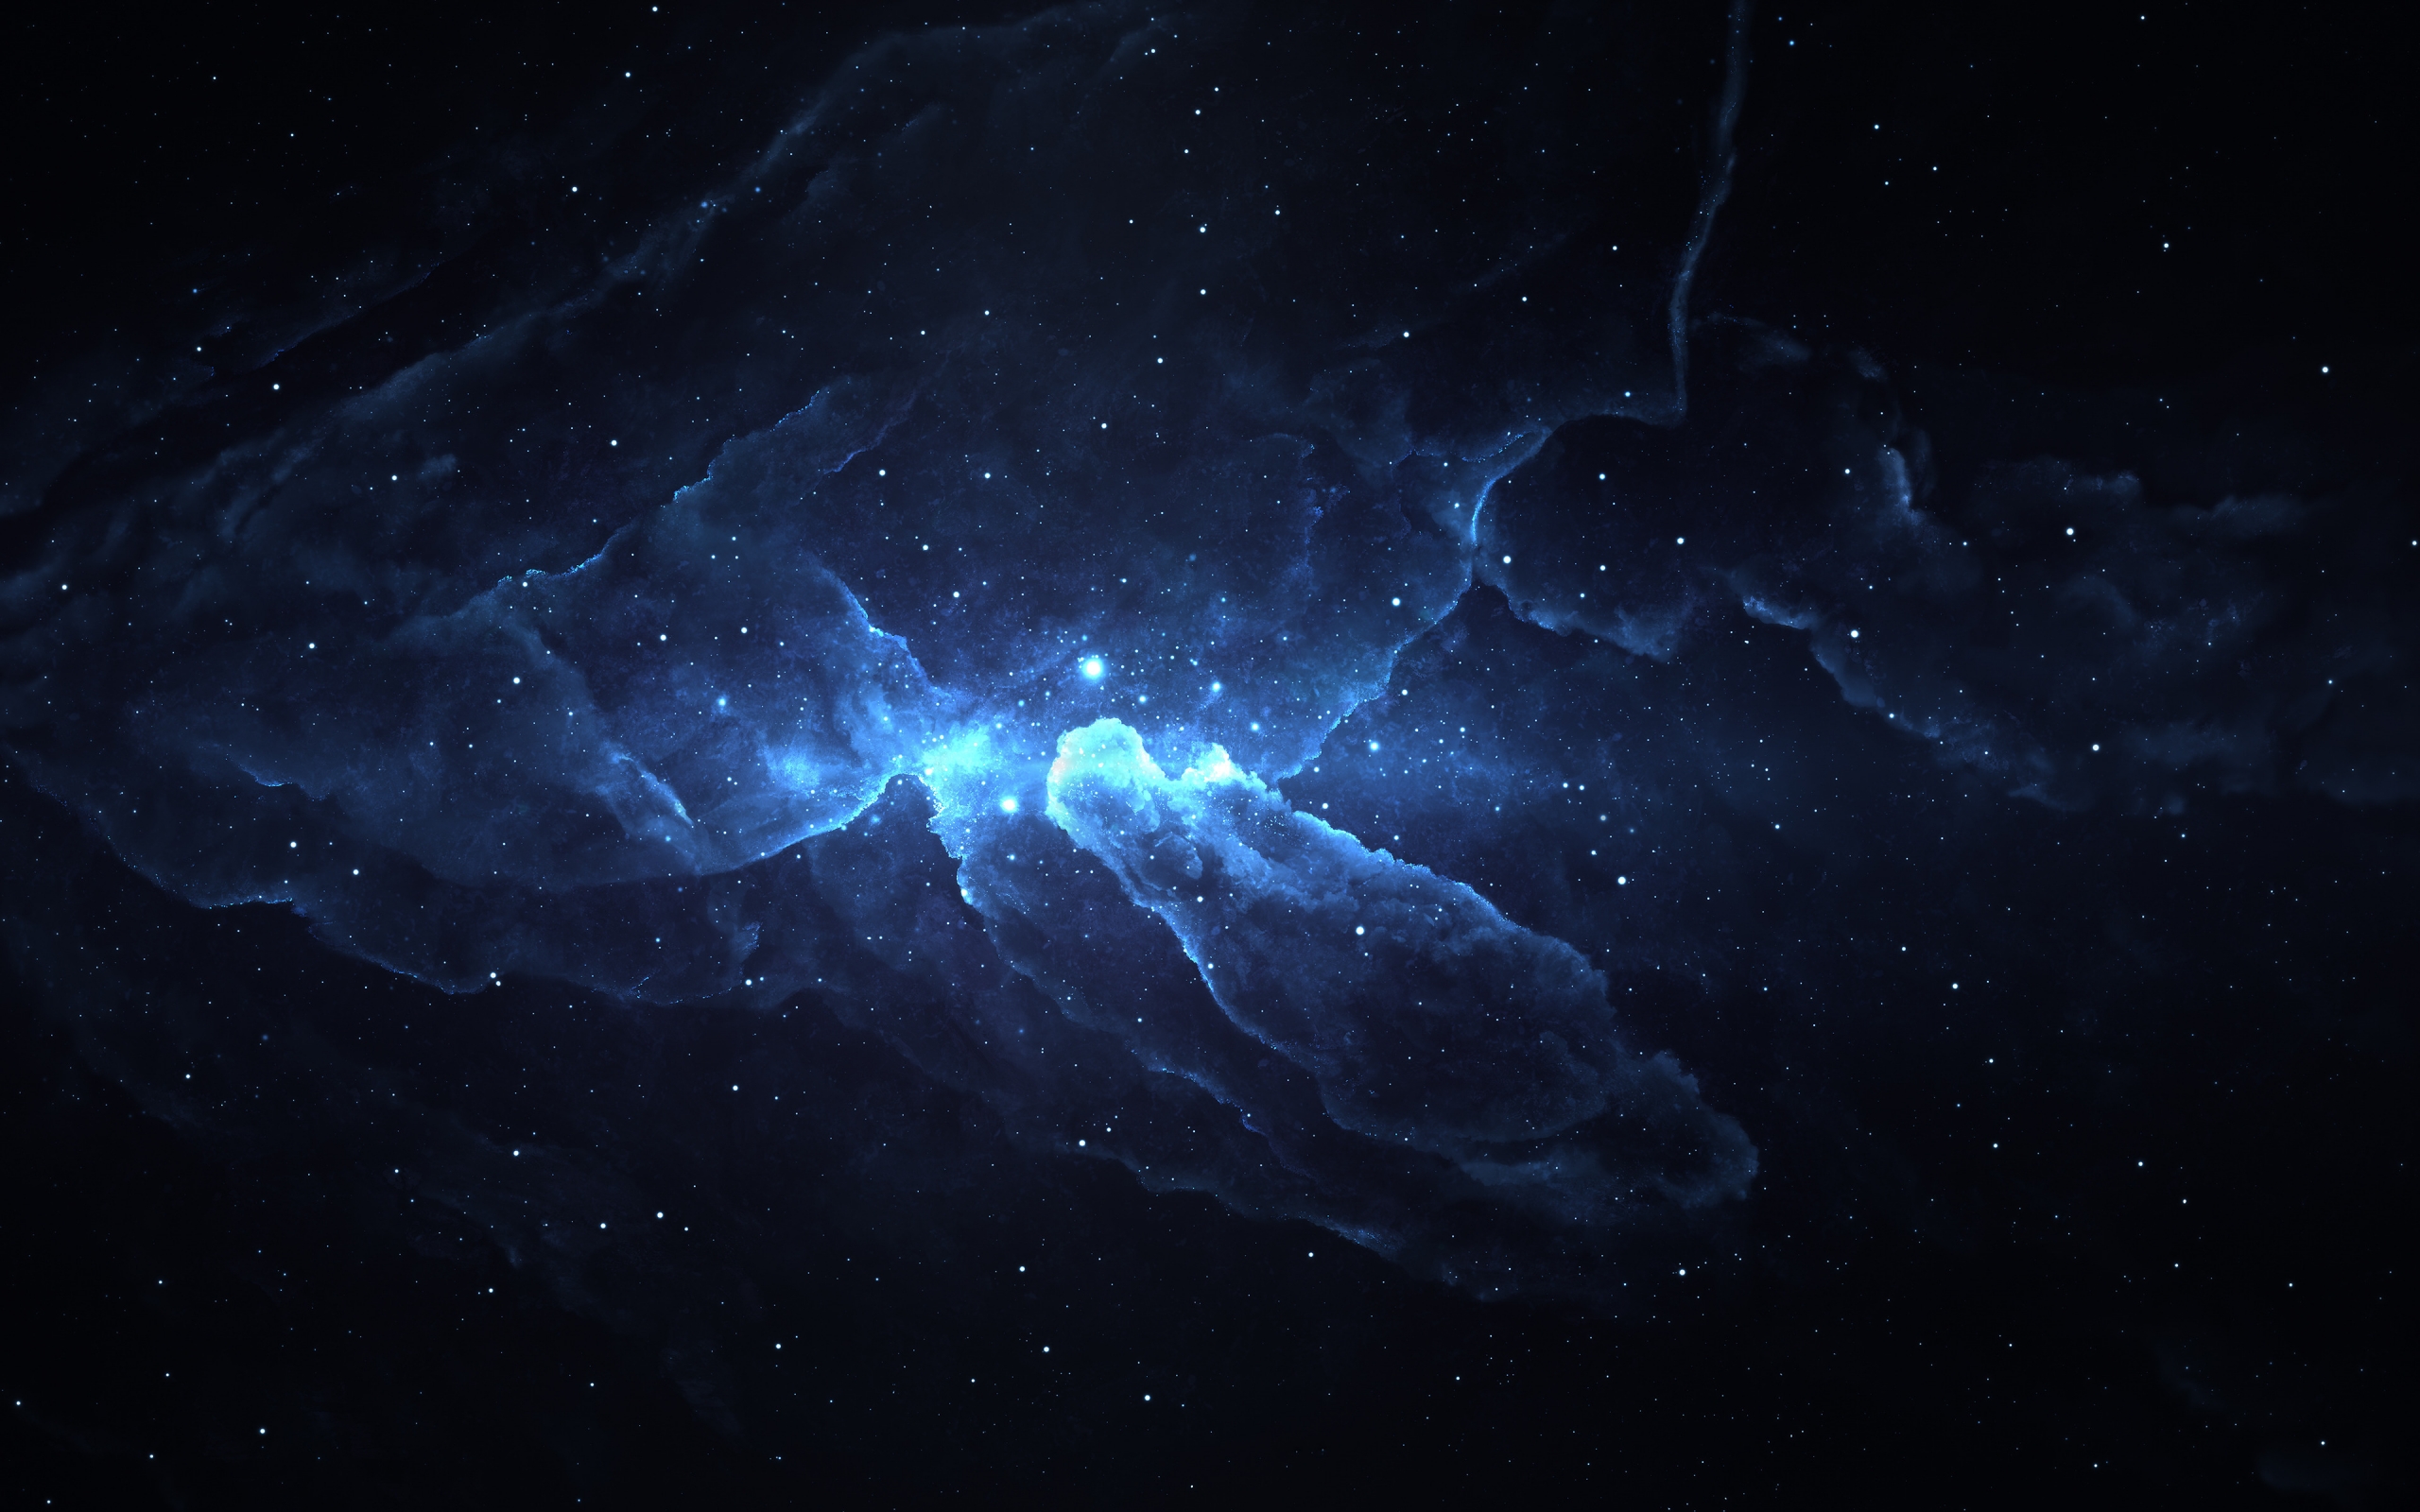 Atlantis Nebula 4 for 2560 x 1600 widescreen resolution